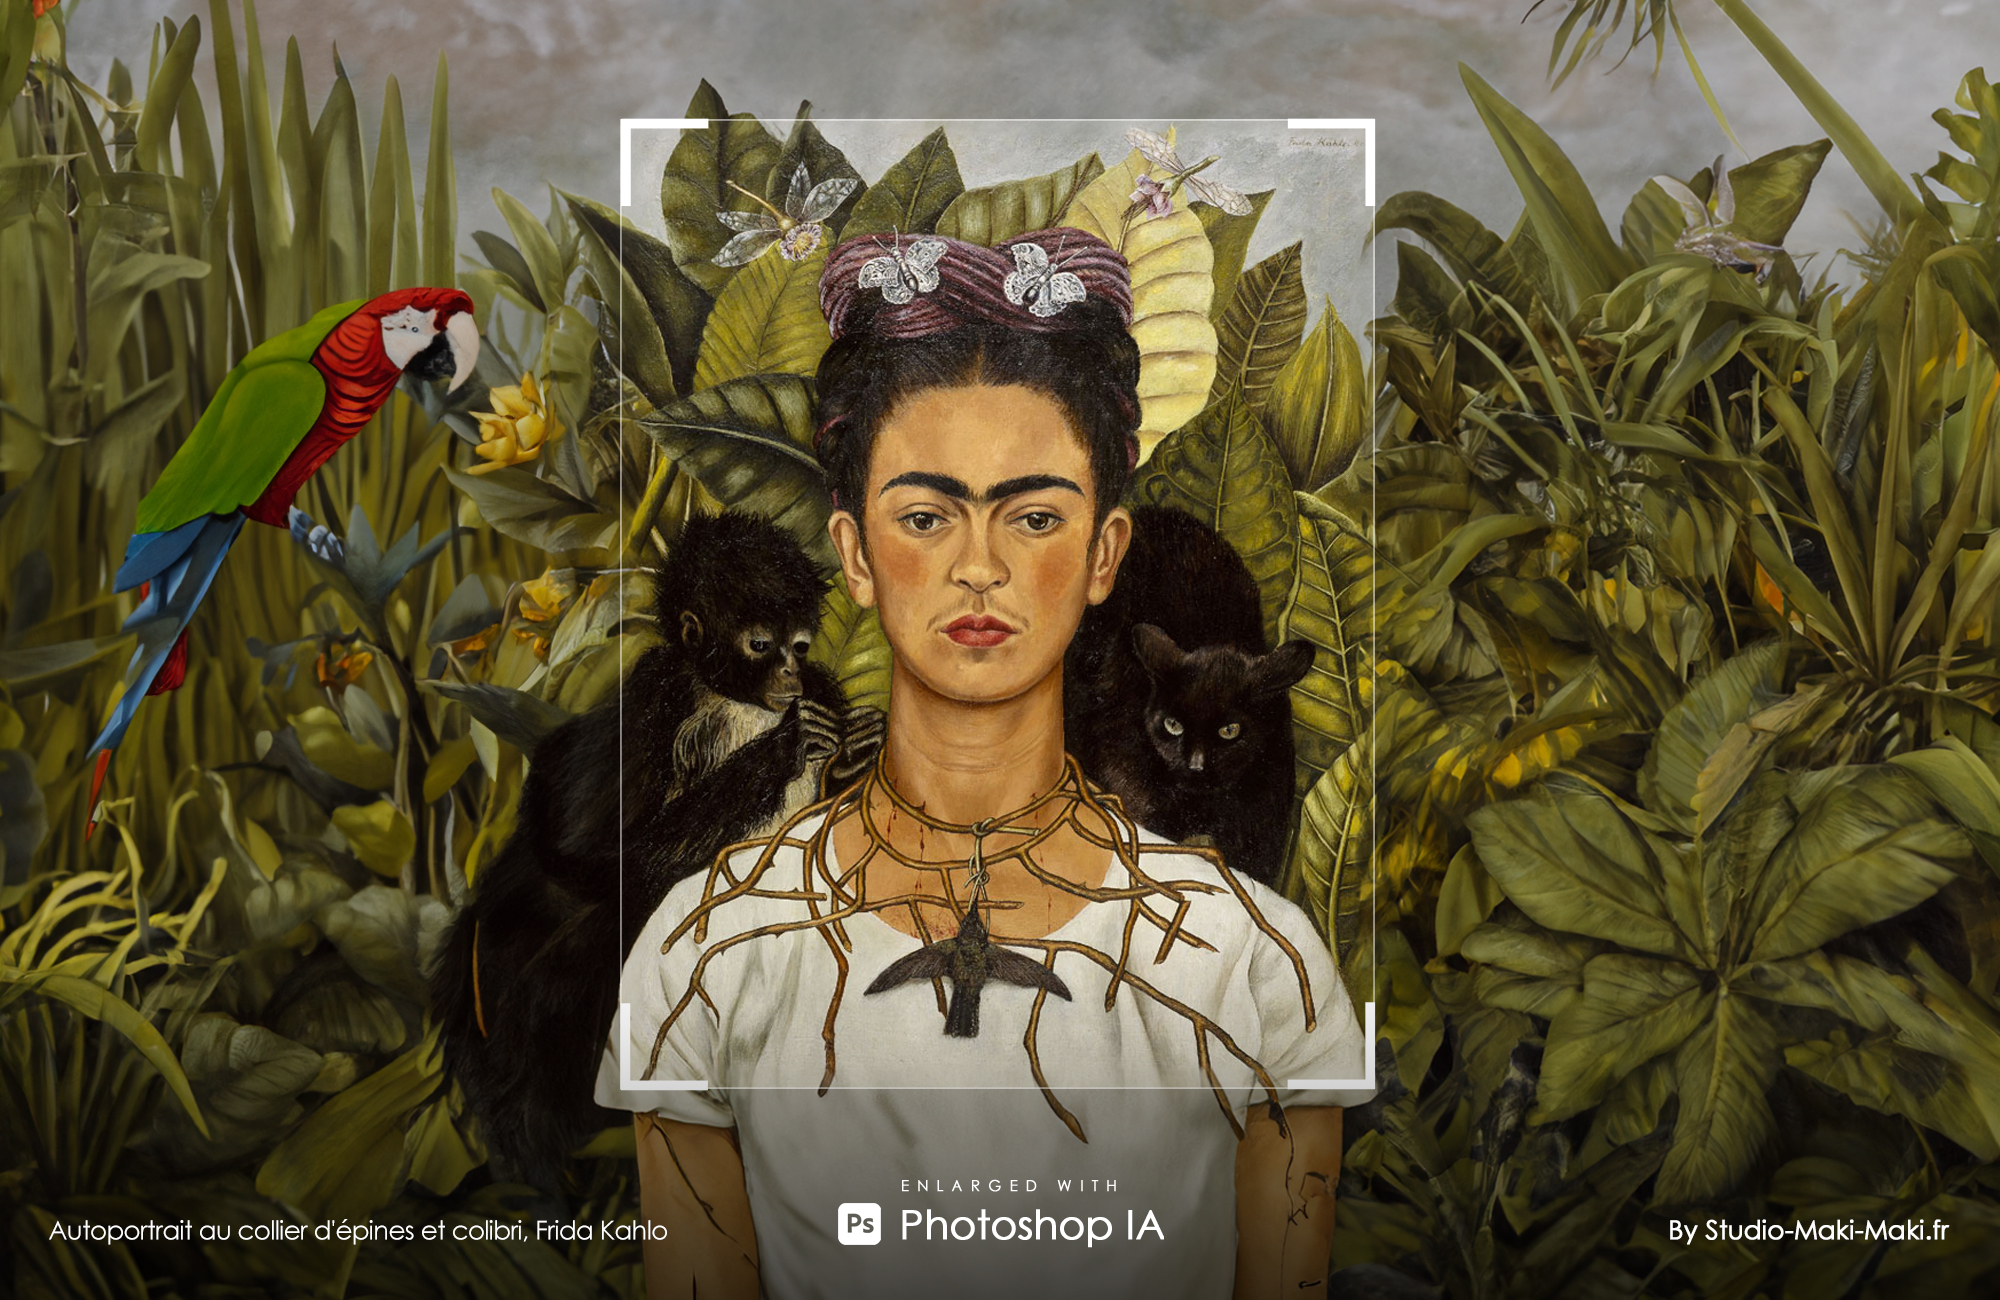 Autoportrait au collier d'épines et colibri, Frida Kahlo - Enlarged with Photoshop IA - By Studio Maki Maki